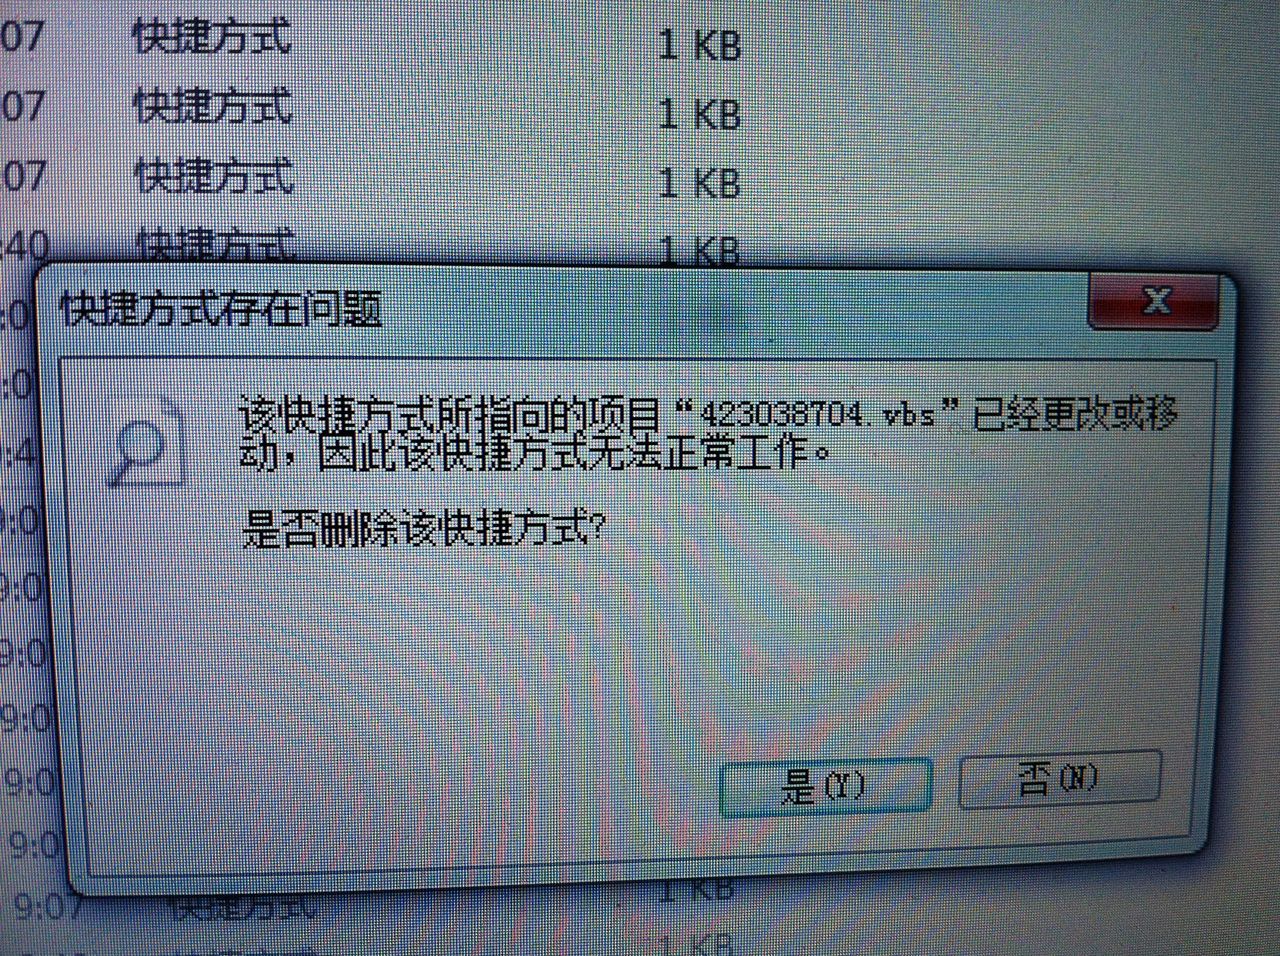 U盘从电脑复制的文件夹显示为空，属性里却占用了容量，这是怎么回事